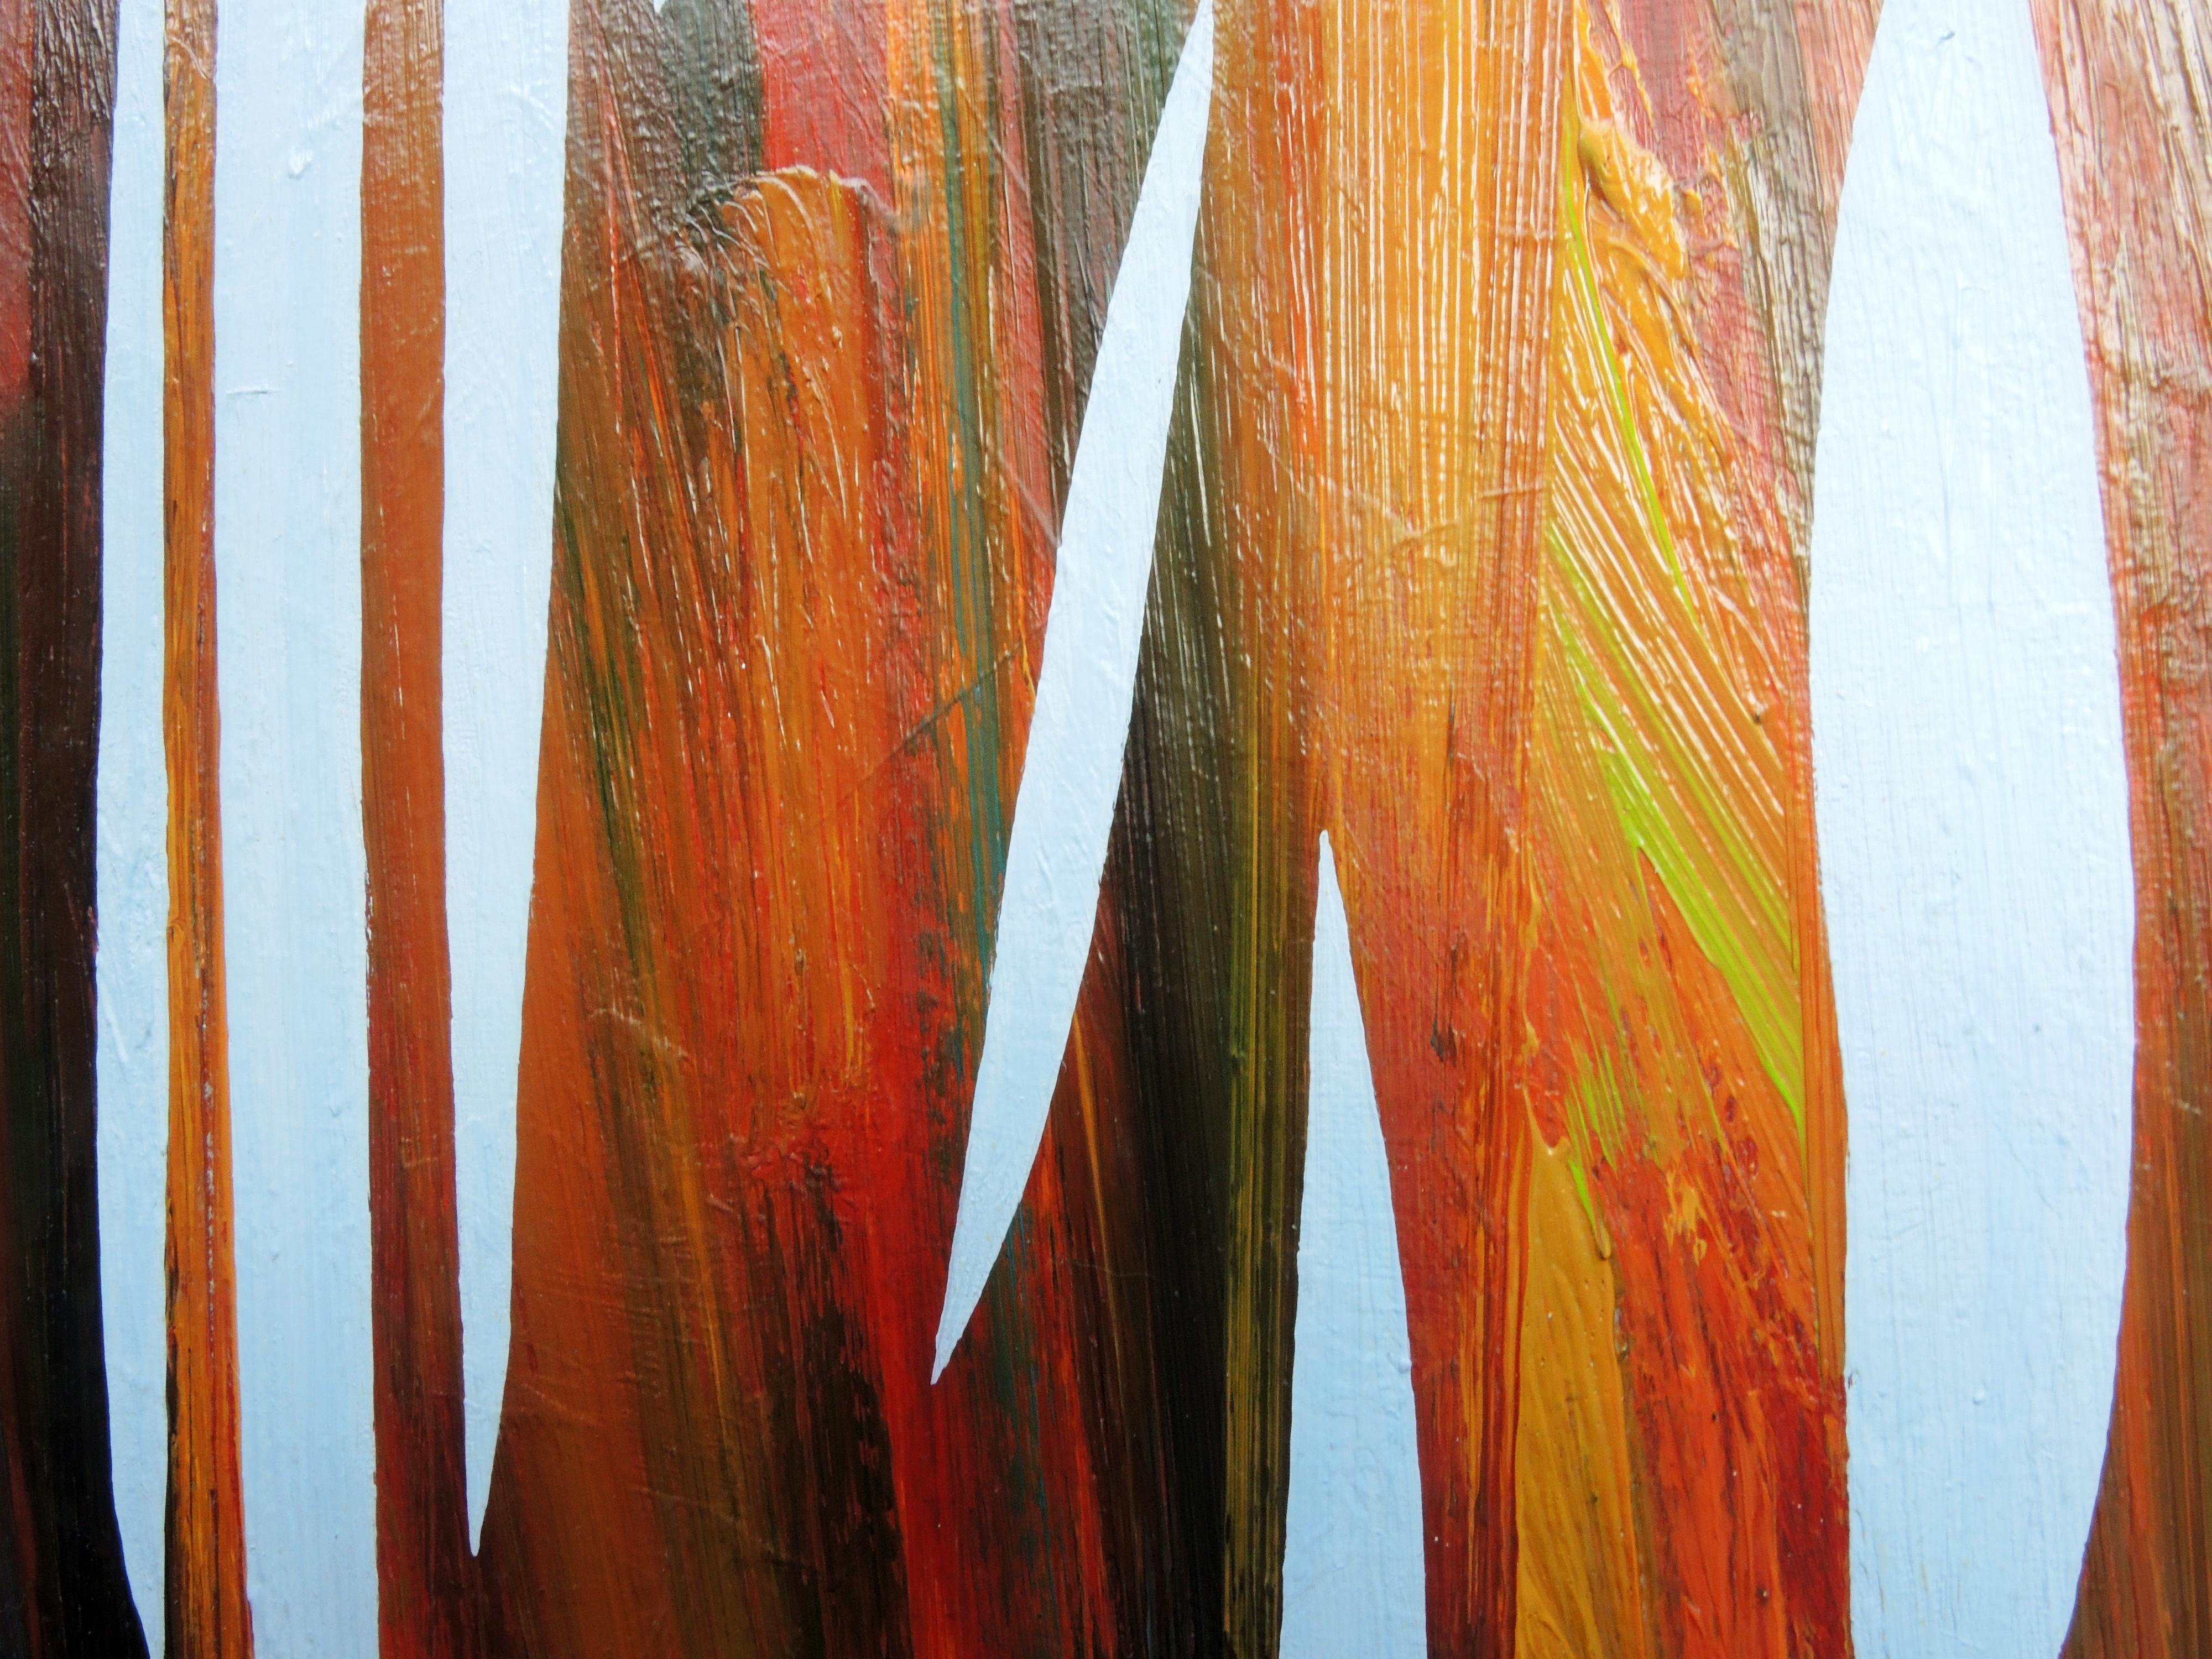 Reed 22 novembre 09:54 - Peinture à l'huile moderne de la nature, abstrait, minimaliste - Moderne Painting par Robert Motelski